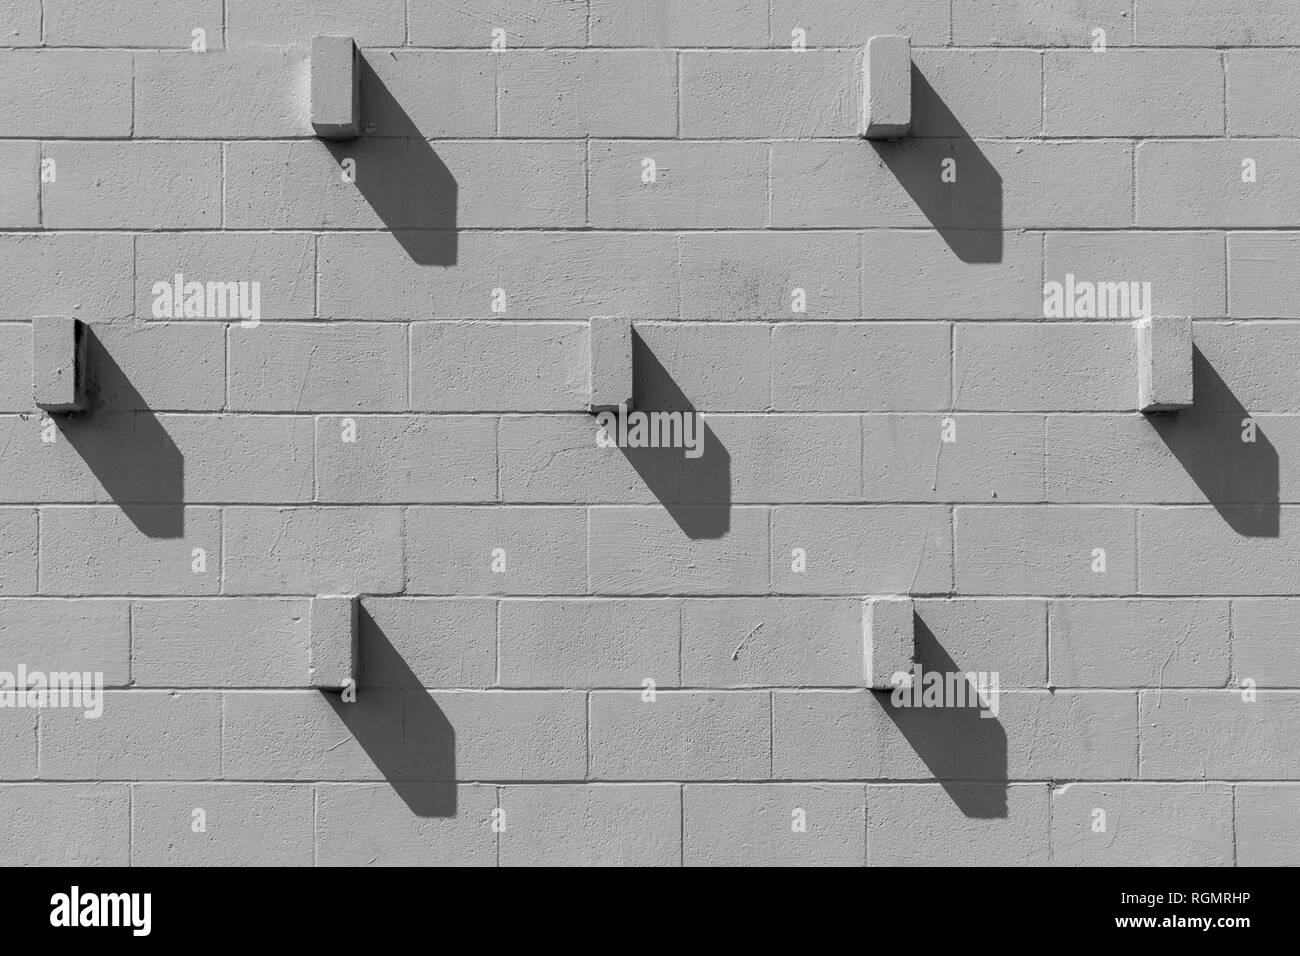 Briques qui dépassent d'un mur de parpaing sont casting shadows en diagonale. La scène ressemble à la face d'un réveil. Banque D'Images